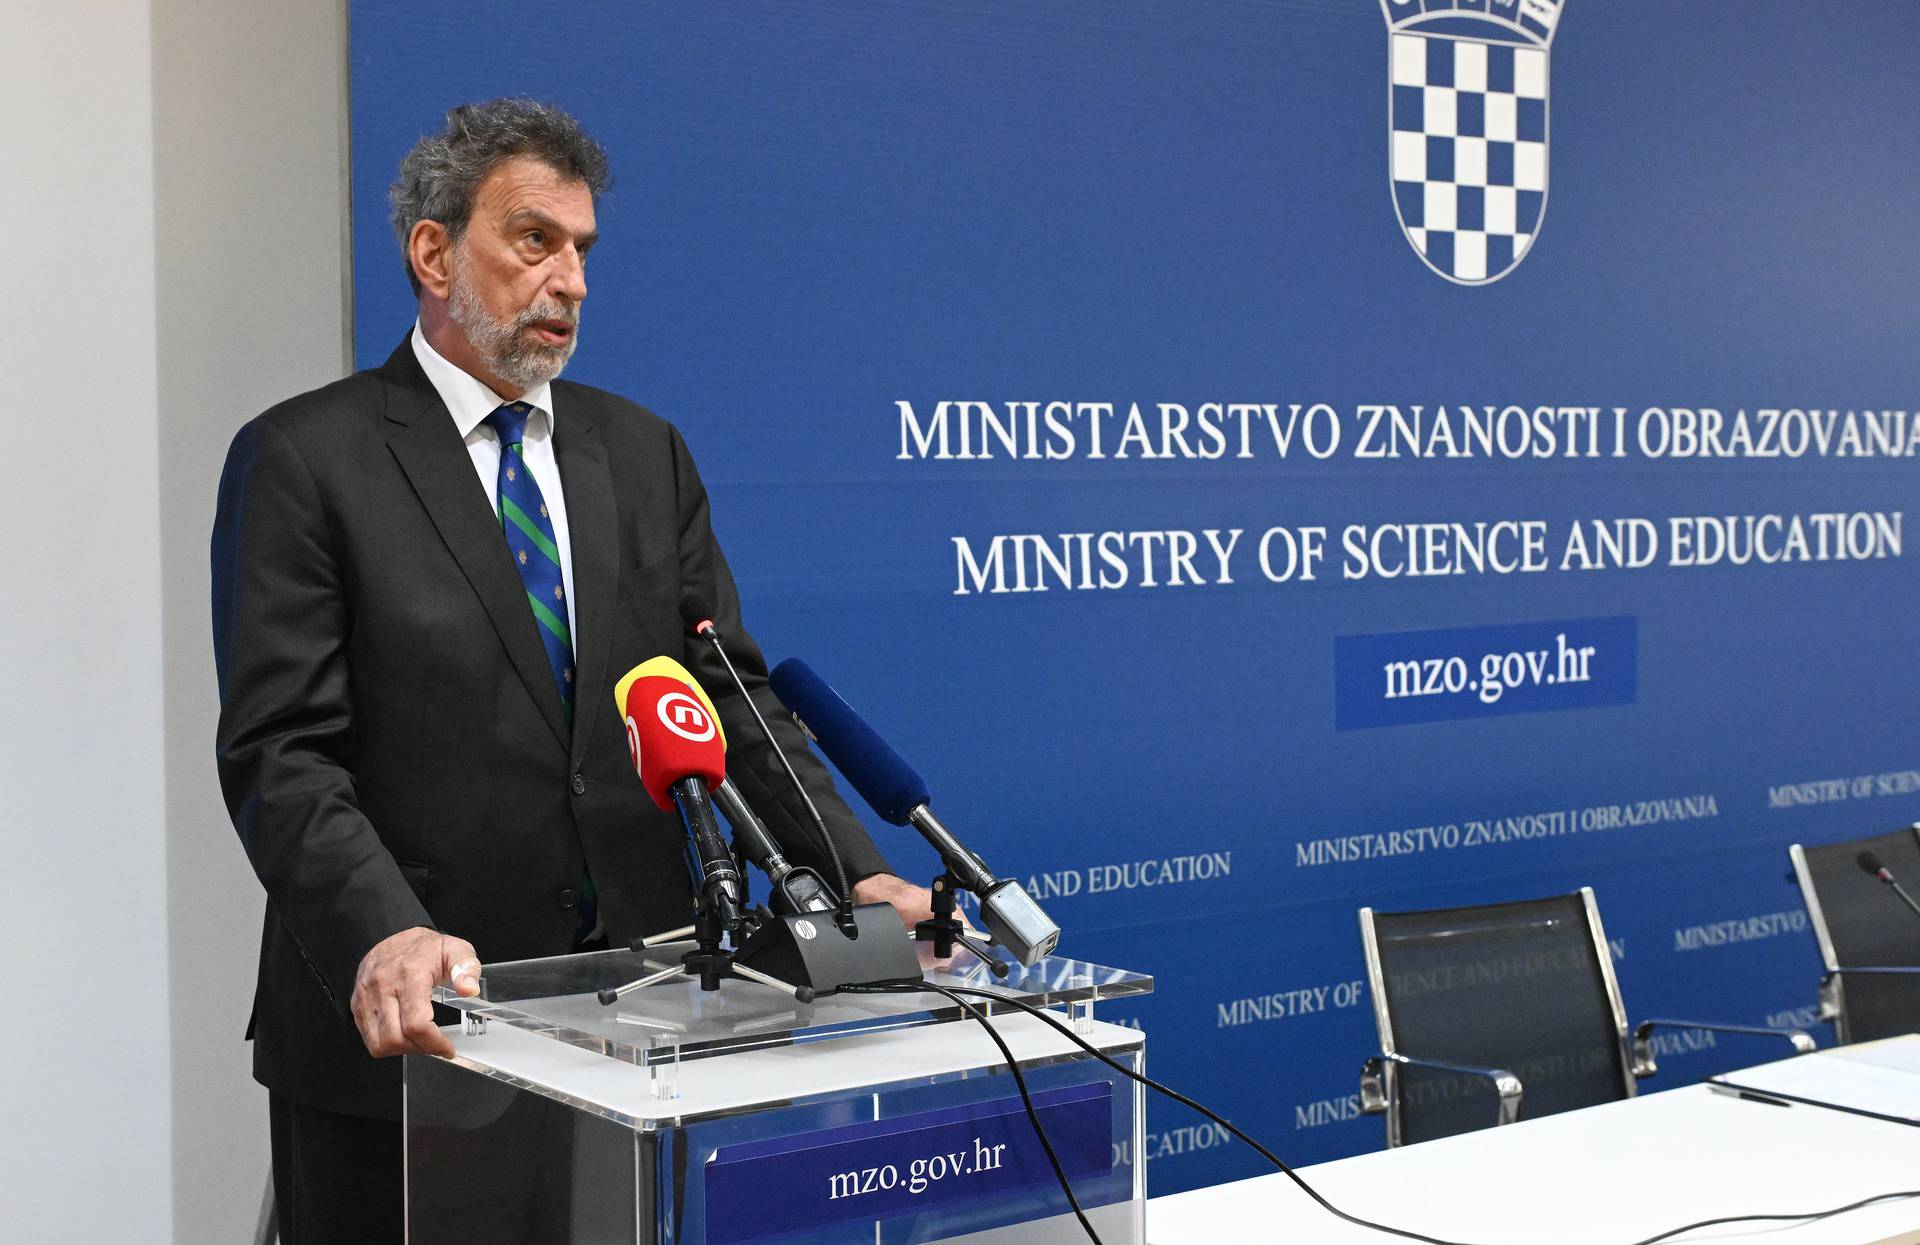 Zagreb: Potpisan sporazum o suradnji Ministarstva znanosti i obrazovanja i Središnjega državnog ureda za demografiju i mlade